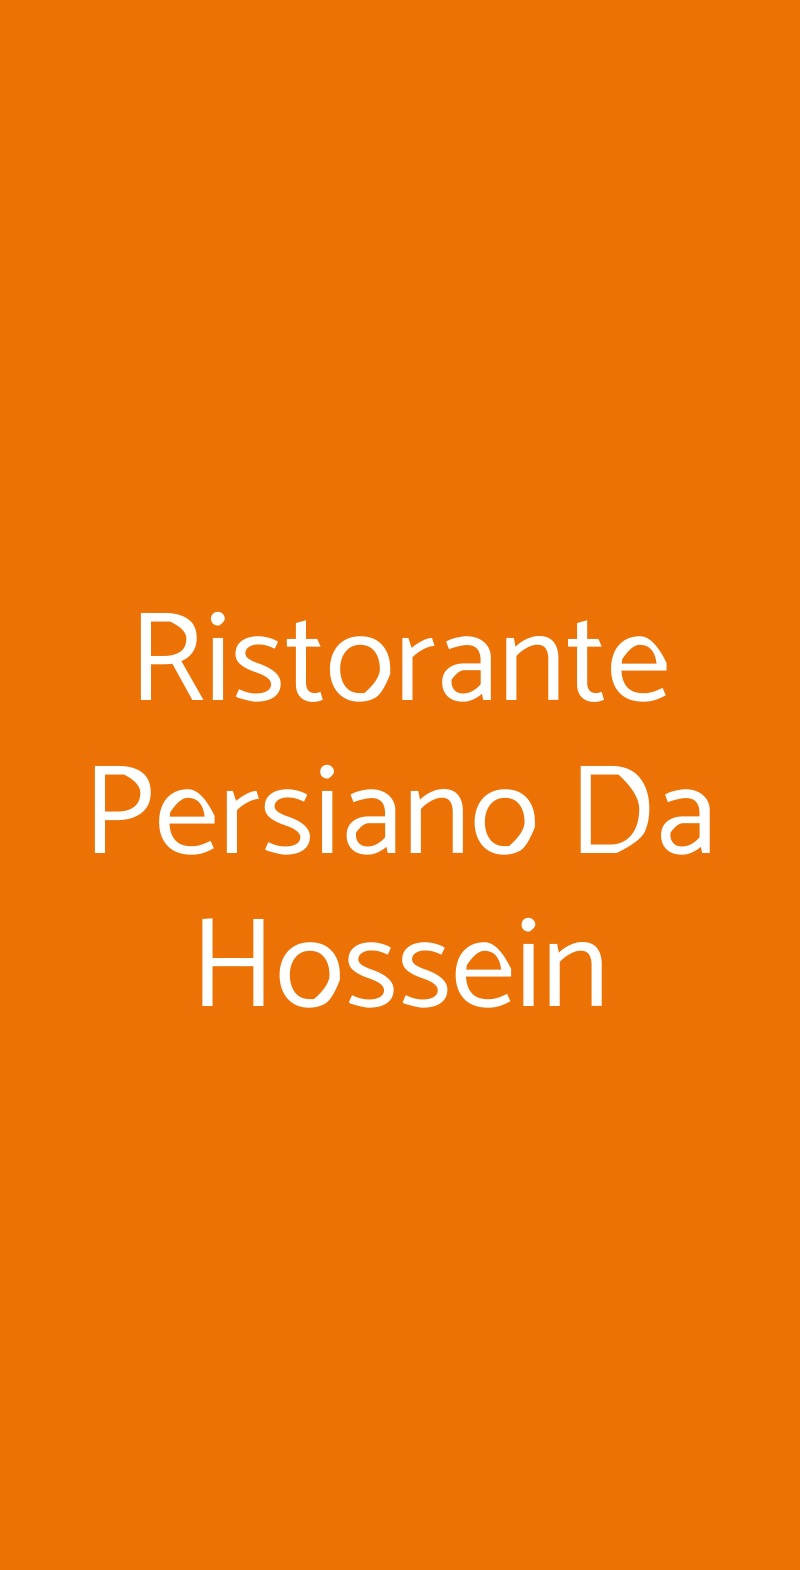 Ristorante Persiano Da Hossein Roma menù 1 pagina